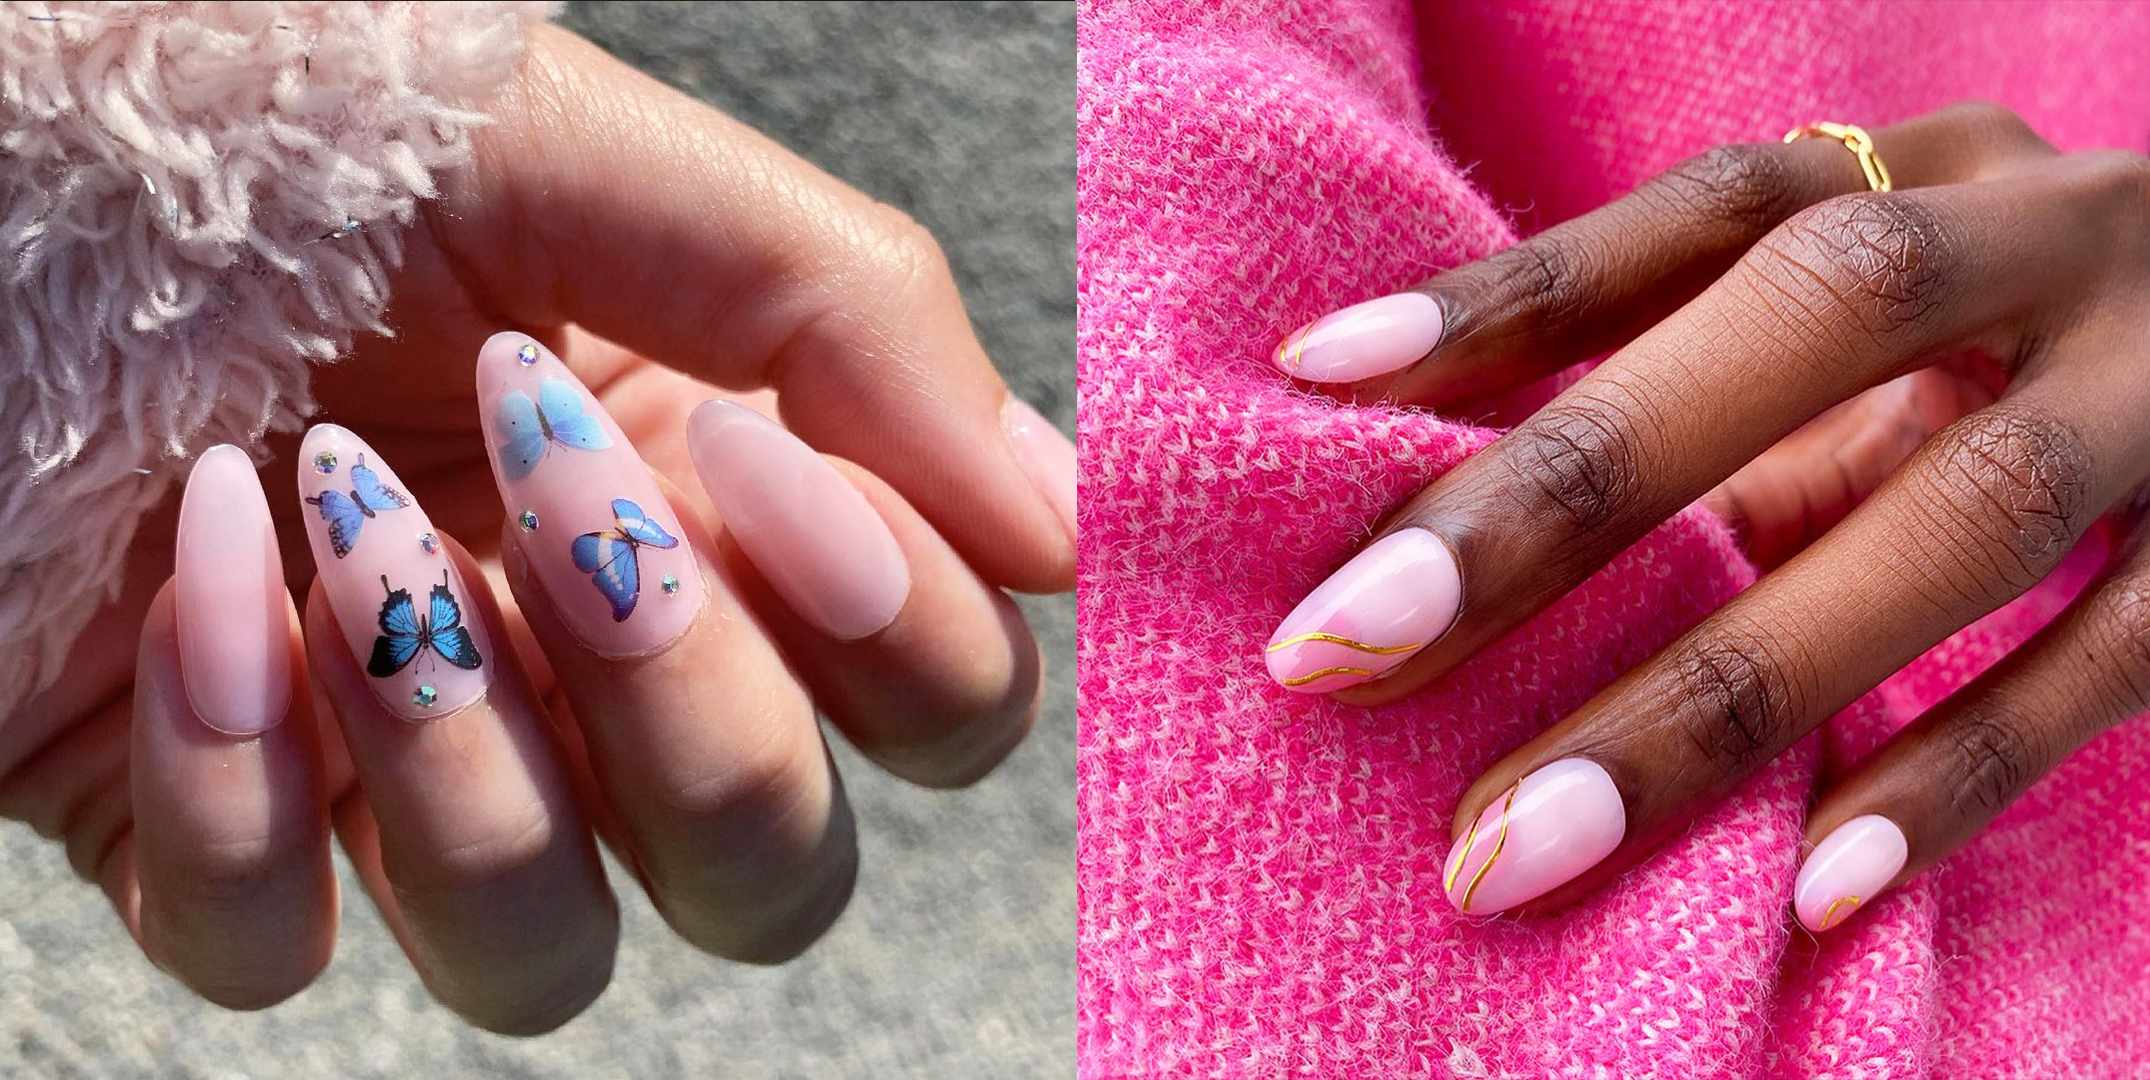 artificial nails gel nails presson nails nail art Press on Nails fall nails